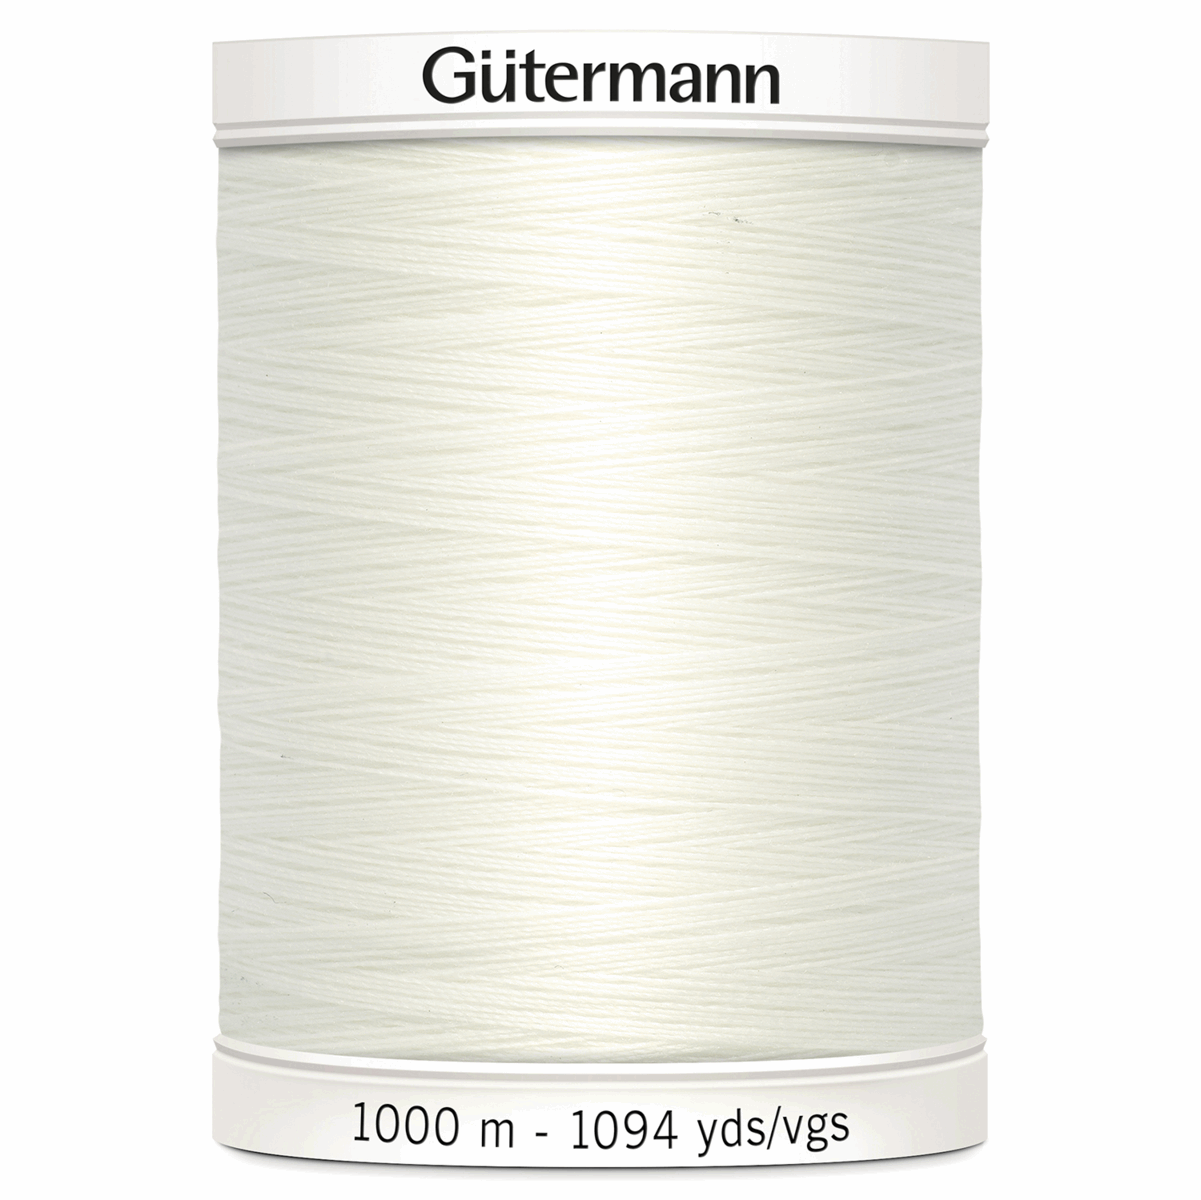 Gutermann Sew-All Thread 1000m - Bridal White (#111)